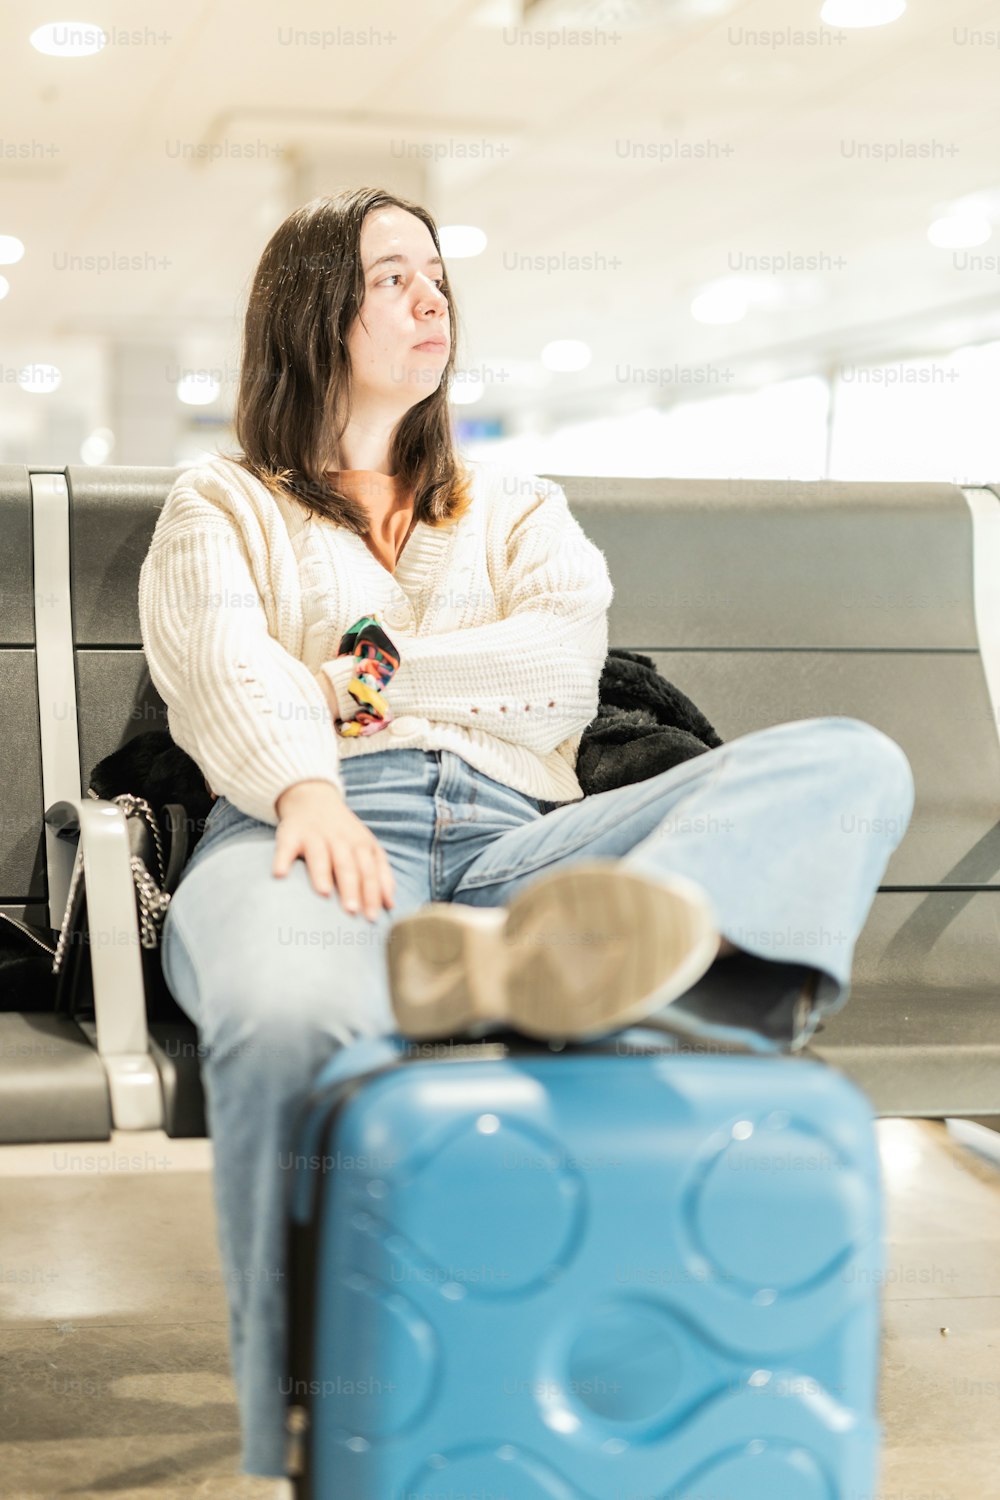 Eine Frau sitzt auf einer Bank neben einem blauen Koffer